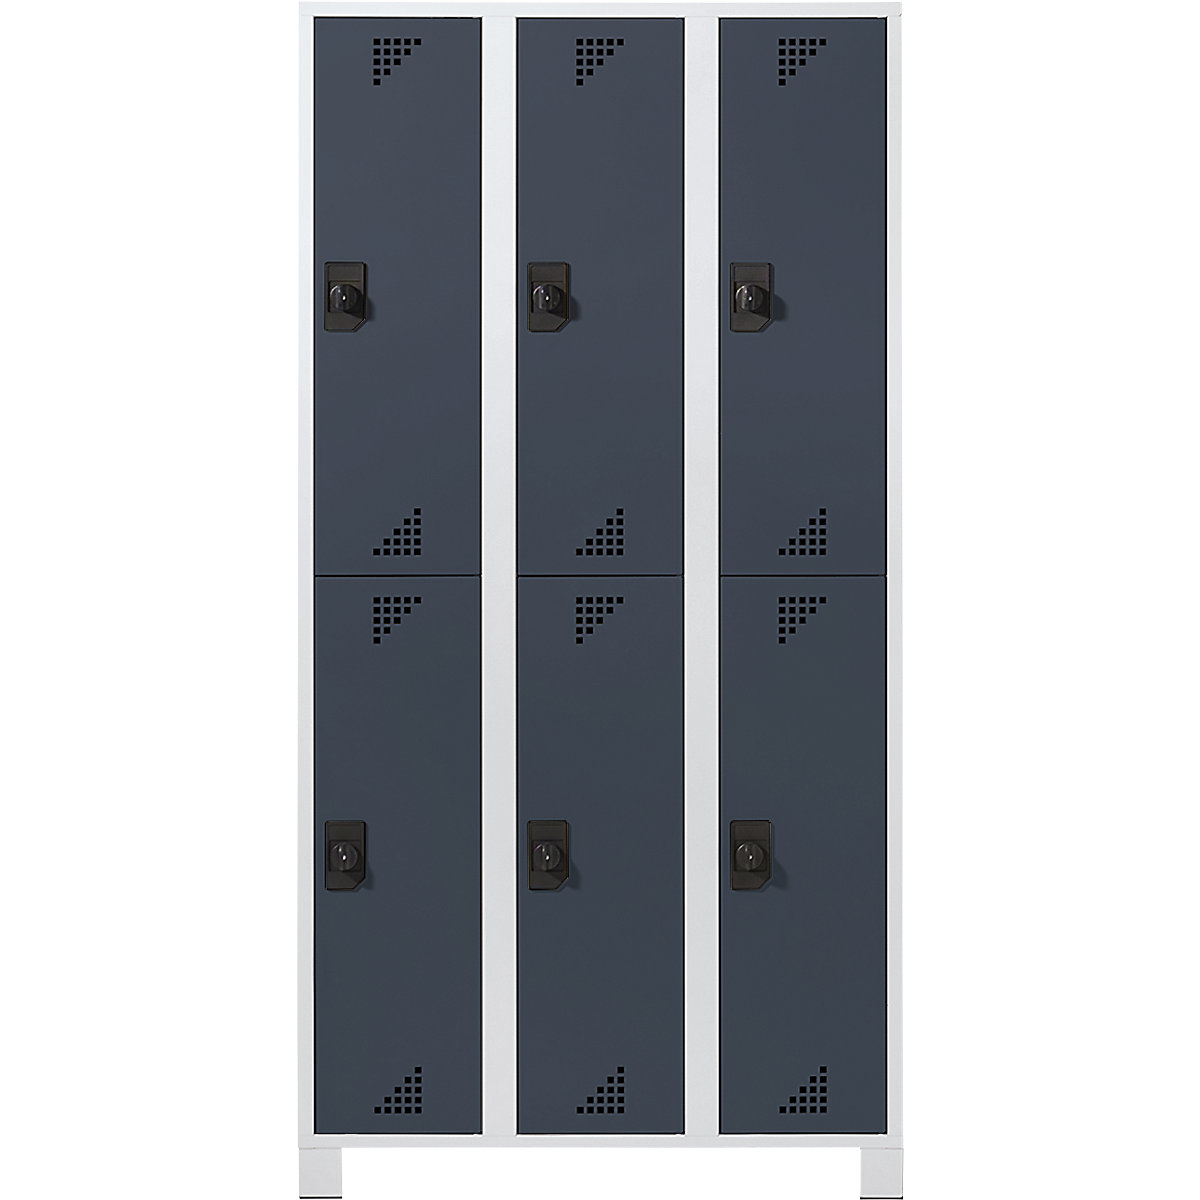 EUROKRAFTpro – Vestiaire à compartiments mi-hauteur, h x l x p 1800 x 1200 x 500 mm, 6 compartiments, corps gris clair, portes anthracite